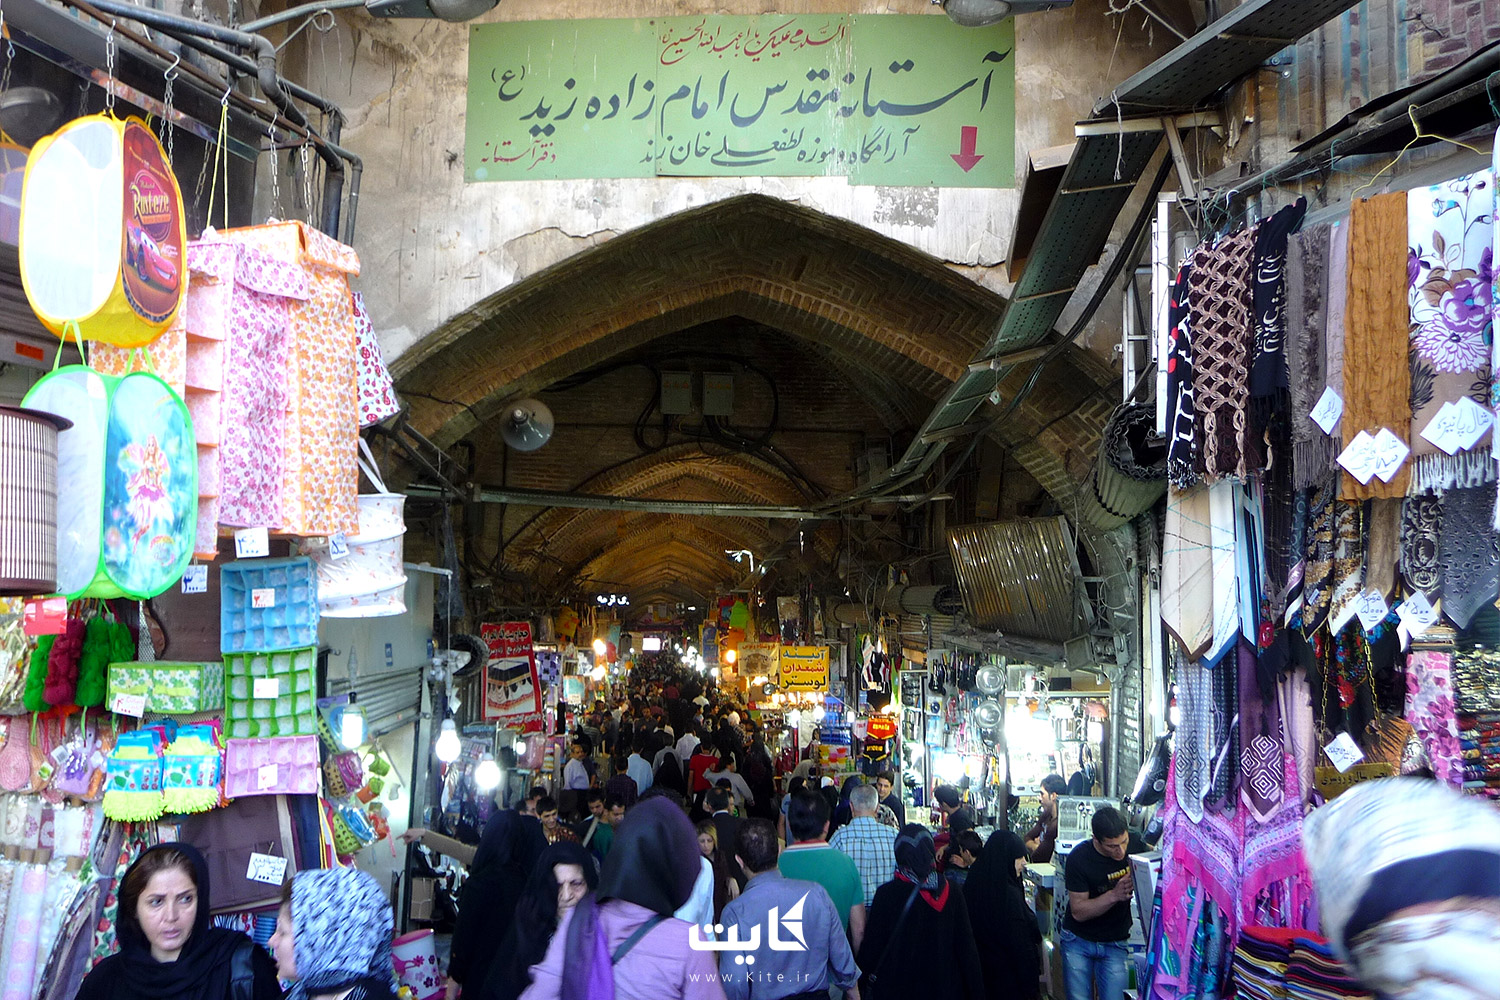 جمعیت زیاد در بازار سنتی تهران